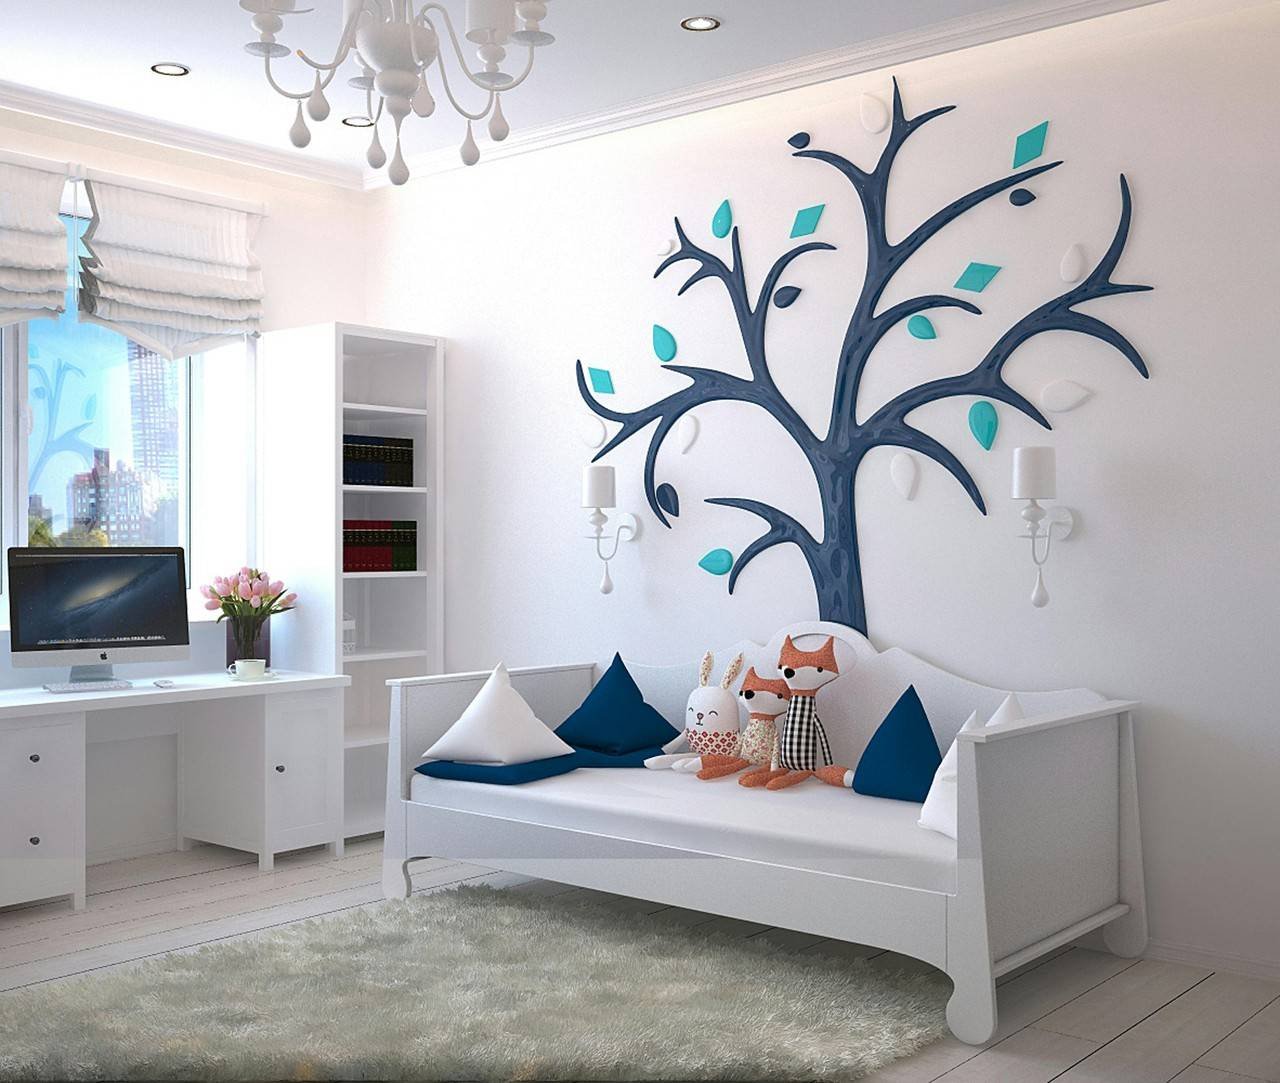 Decoração neutra de quarto de criança com berço-cama branco, almofadas coloridas e desenho de árvore na parede